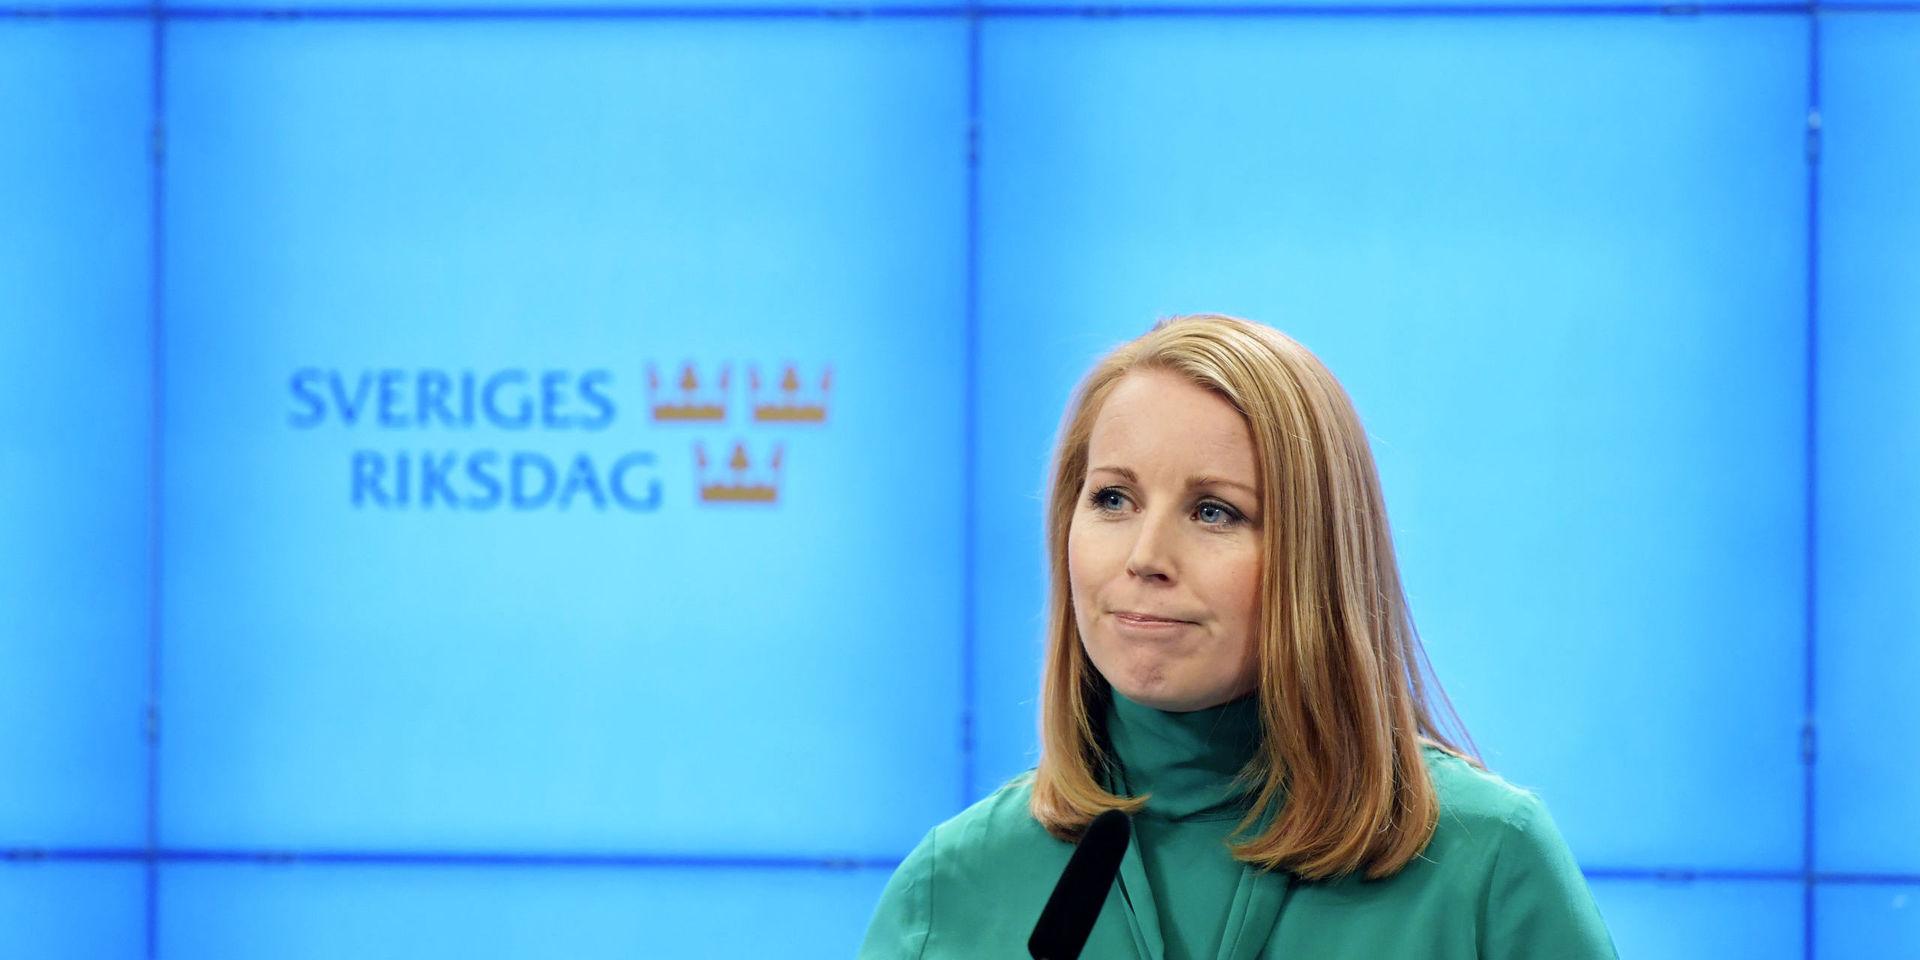 STOCKHOLM 20181122
Centerpartiets partiledare Annie Lööf (C) håller en pressträff efter att hon haft ett möte med riksdagens talman för att rapportera om sitt sonderingsuppdrag.
Foto: Jessica Gow / TT kod 10070